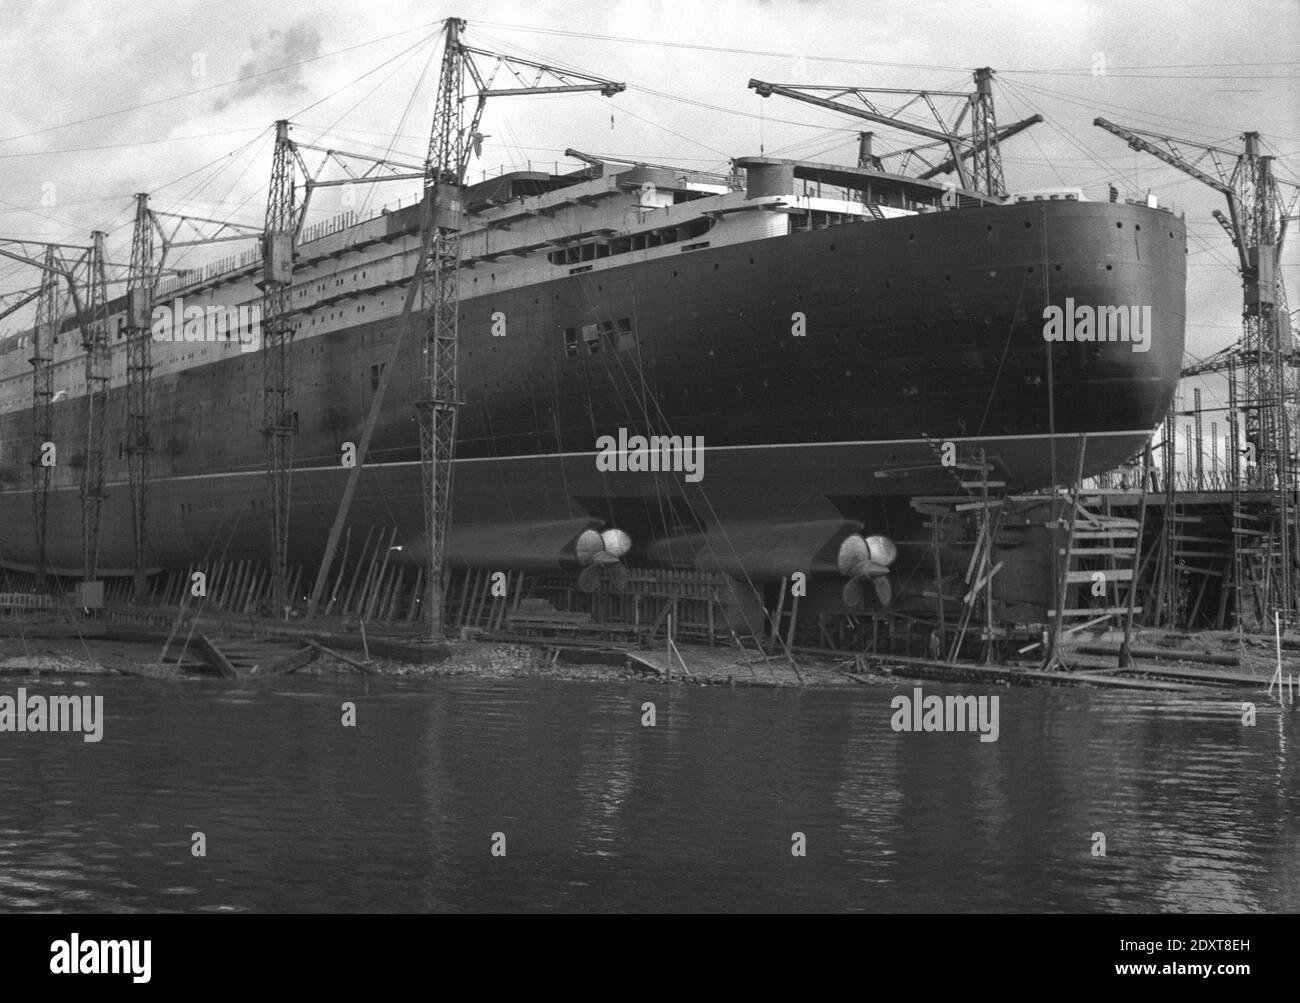 1930er Jahre, historisch, die RMS Queen Elizabeth im Bau auf dem Clyde, Glasgow, Schottland. UK. Benannt nach der Ehefrau von König Georg VI. War sie das größte Passagierschiff, das zu dieser Zeit gebaut wurde. Obwohl sie 1938 offiziell gestartet wurde, bedeutete der Ausbruch des 2. Weltkriegs, dass sie während der Feindseligkeiten zu einem Truppenschiff umgebaut wurde, bevor sie 1948 ihre erste Reise unternahm. Sie wurde 1968 in den Ruhestand versetzt. Stockfoto